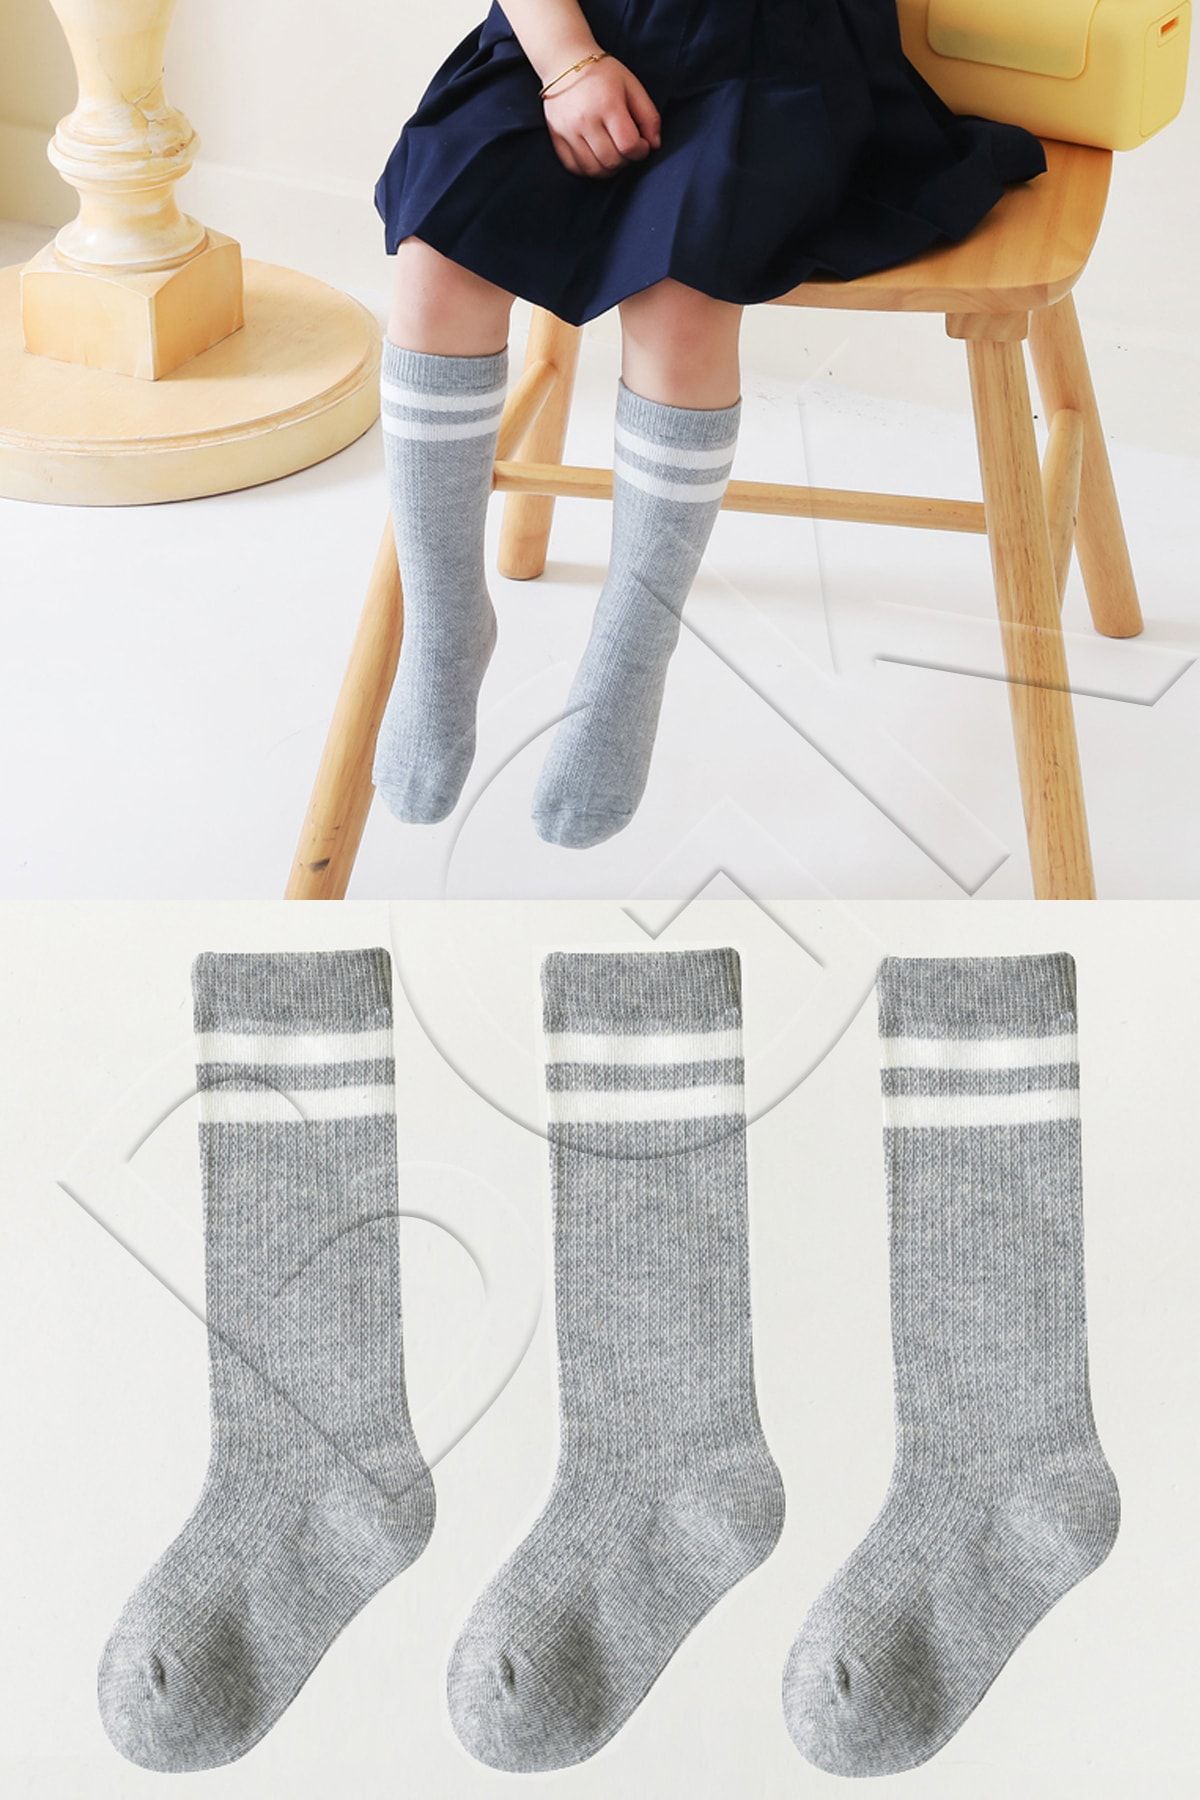 BGK 3 Çift Çocuk Dizaltı Renkli Çorap